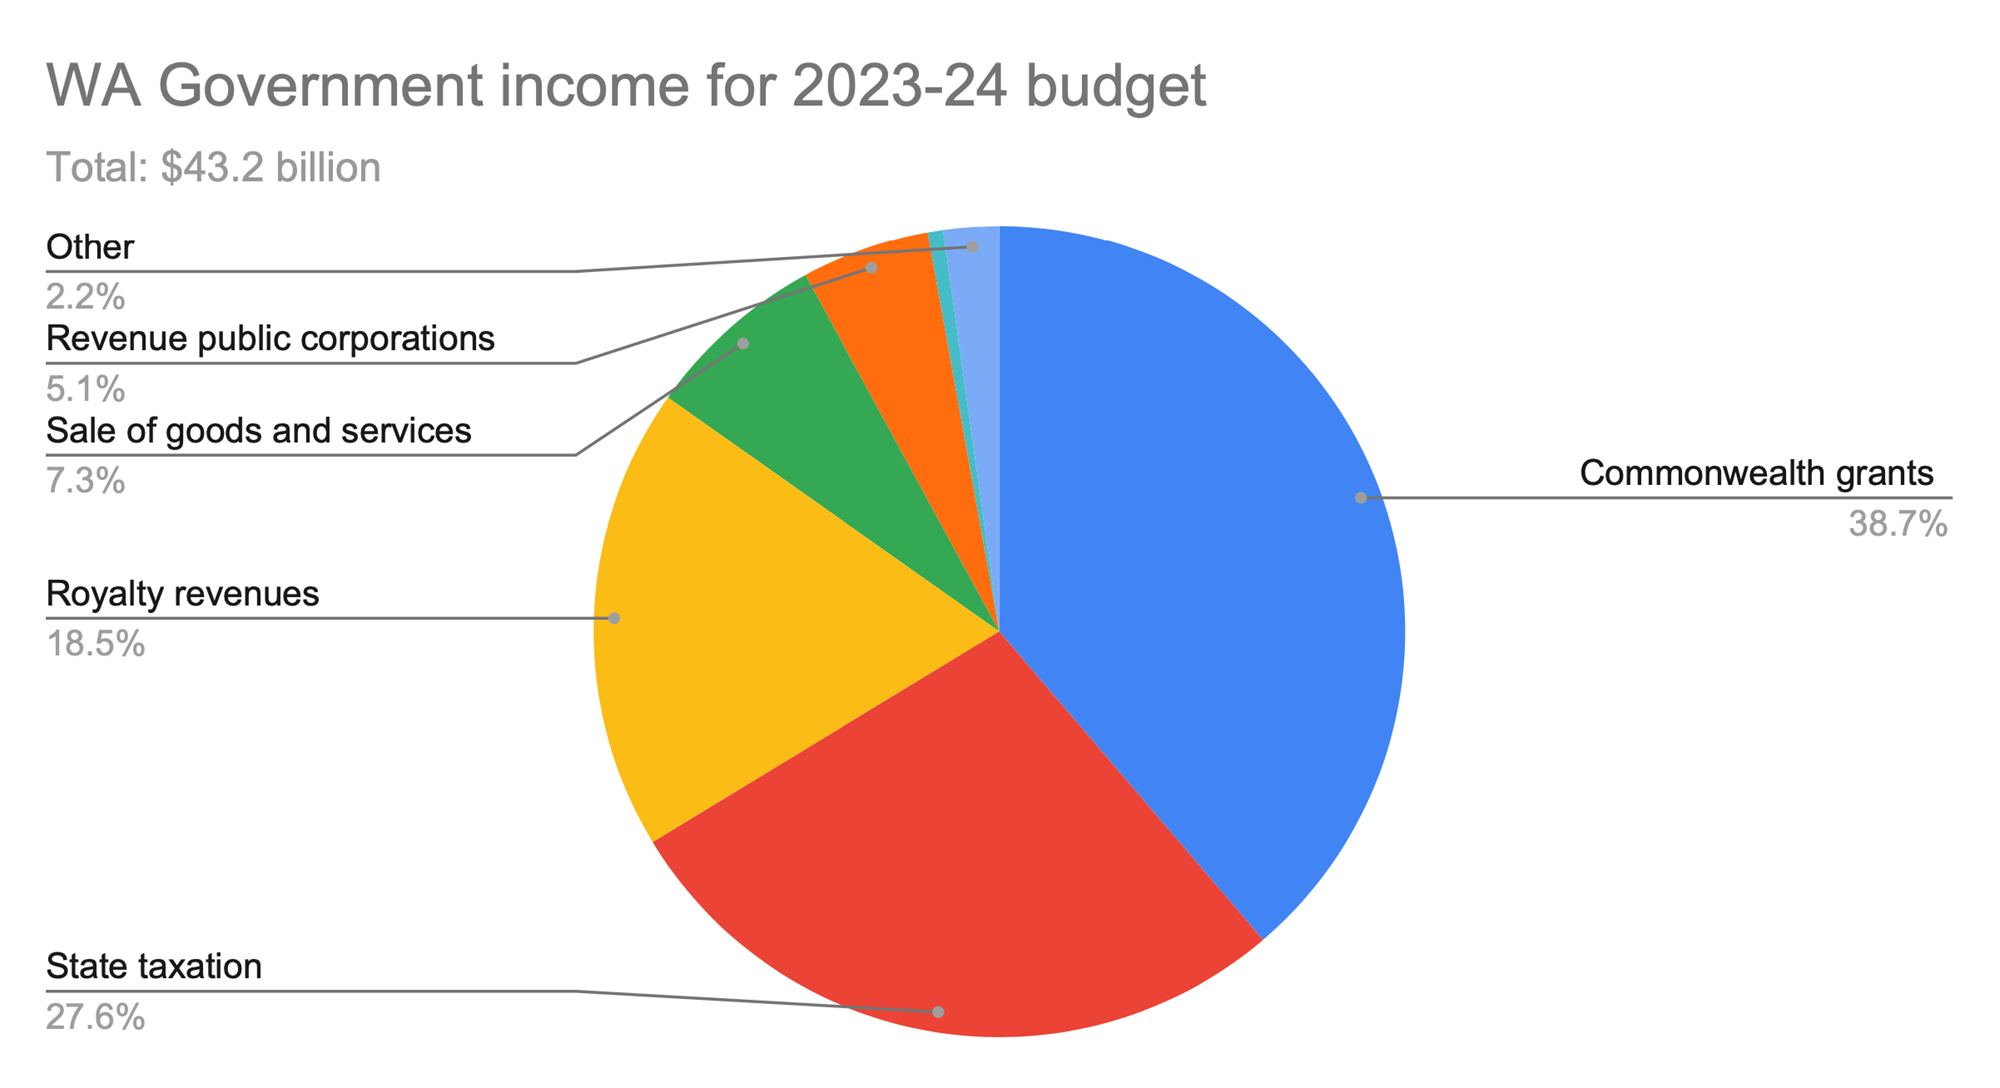 A pie chart breaking down WA's revenue